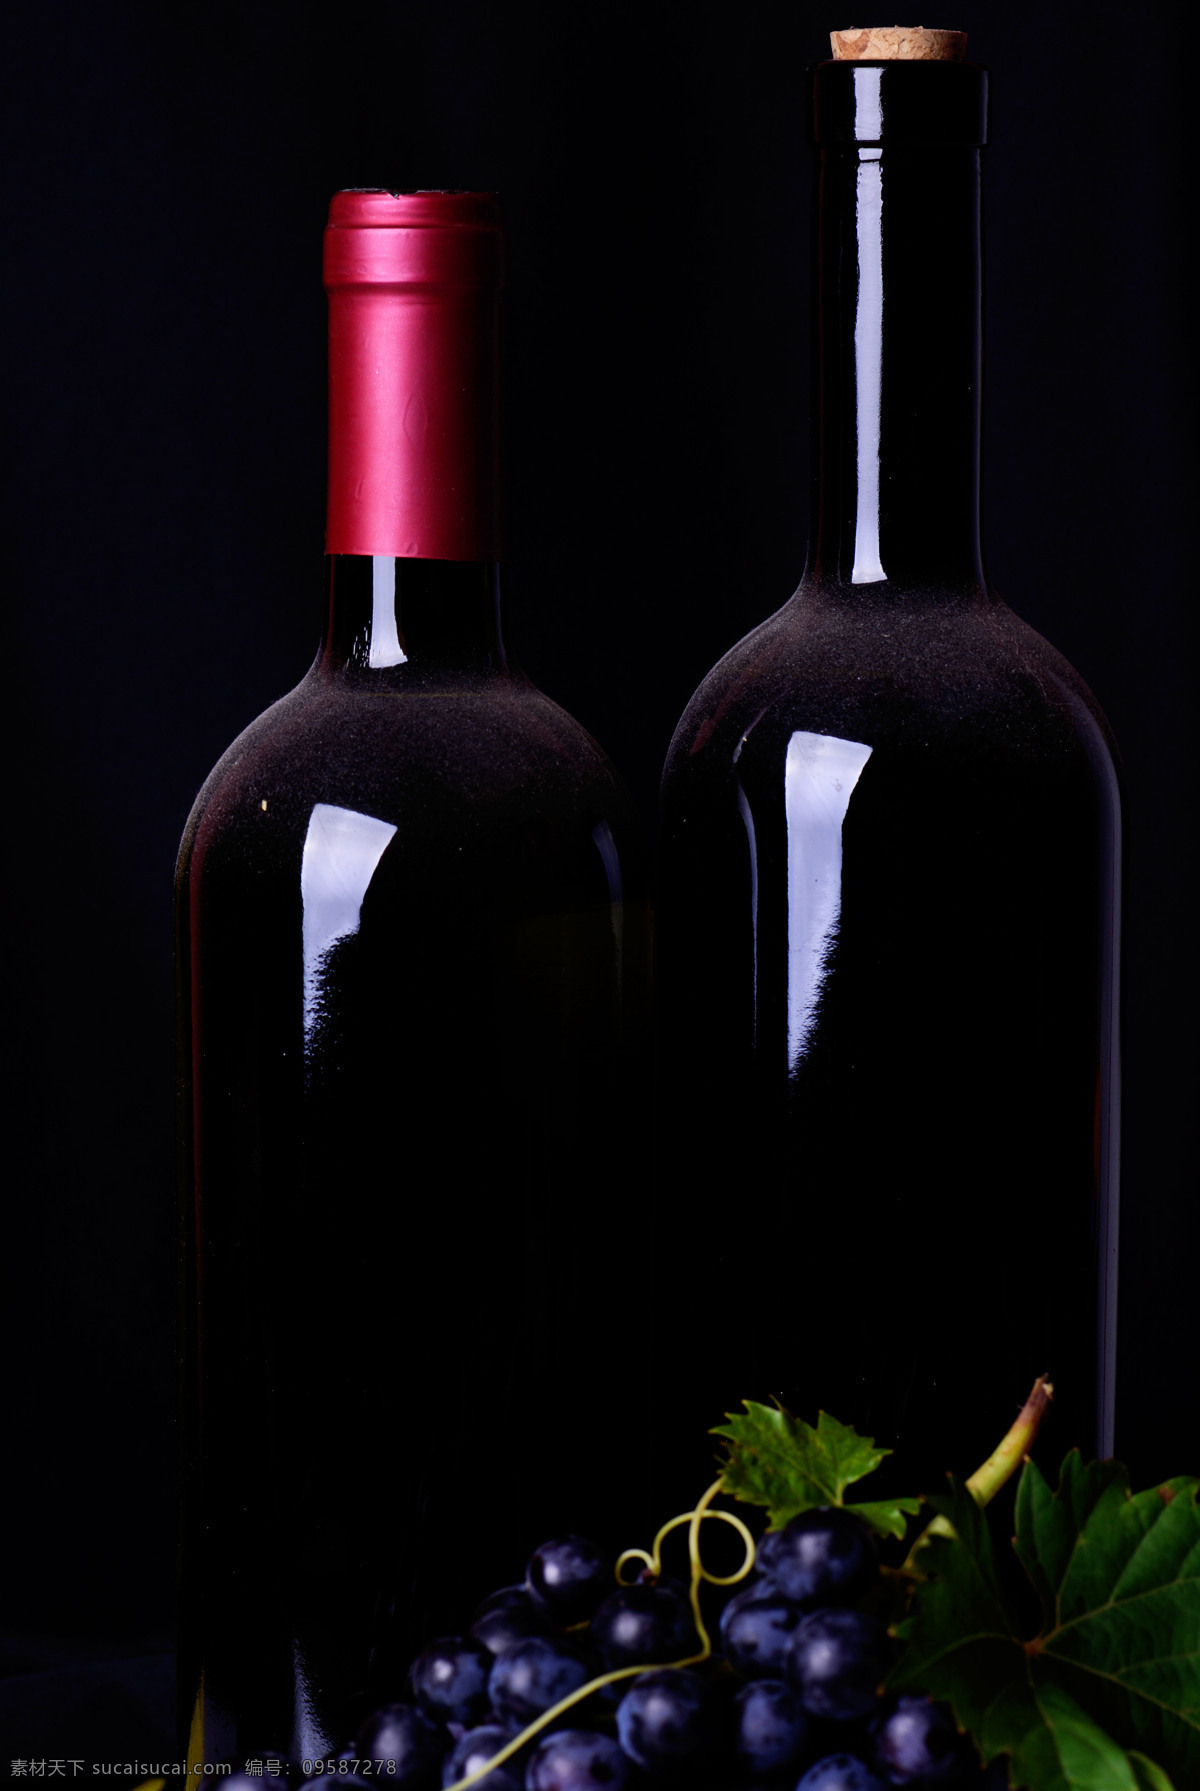 紫色 葡萄 酒瓶 水果 酒杯 杯子 葡萄酒 休闲饮品 酒水饮料 餐饮美食 酒类图片